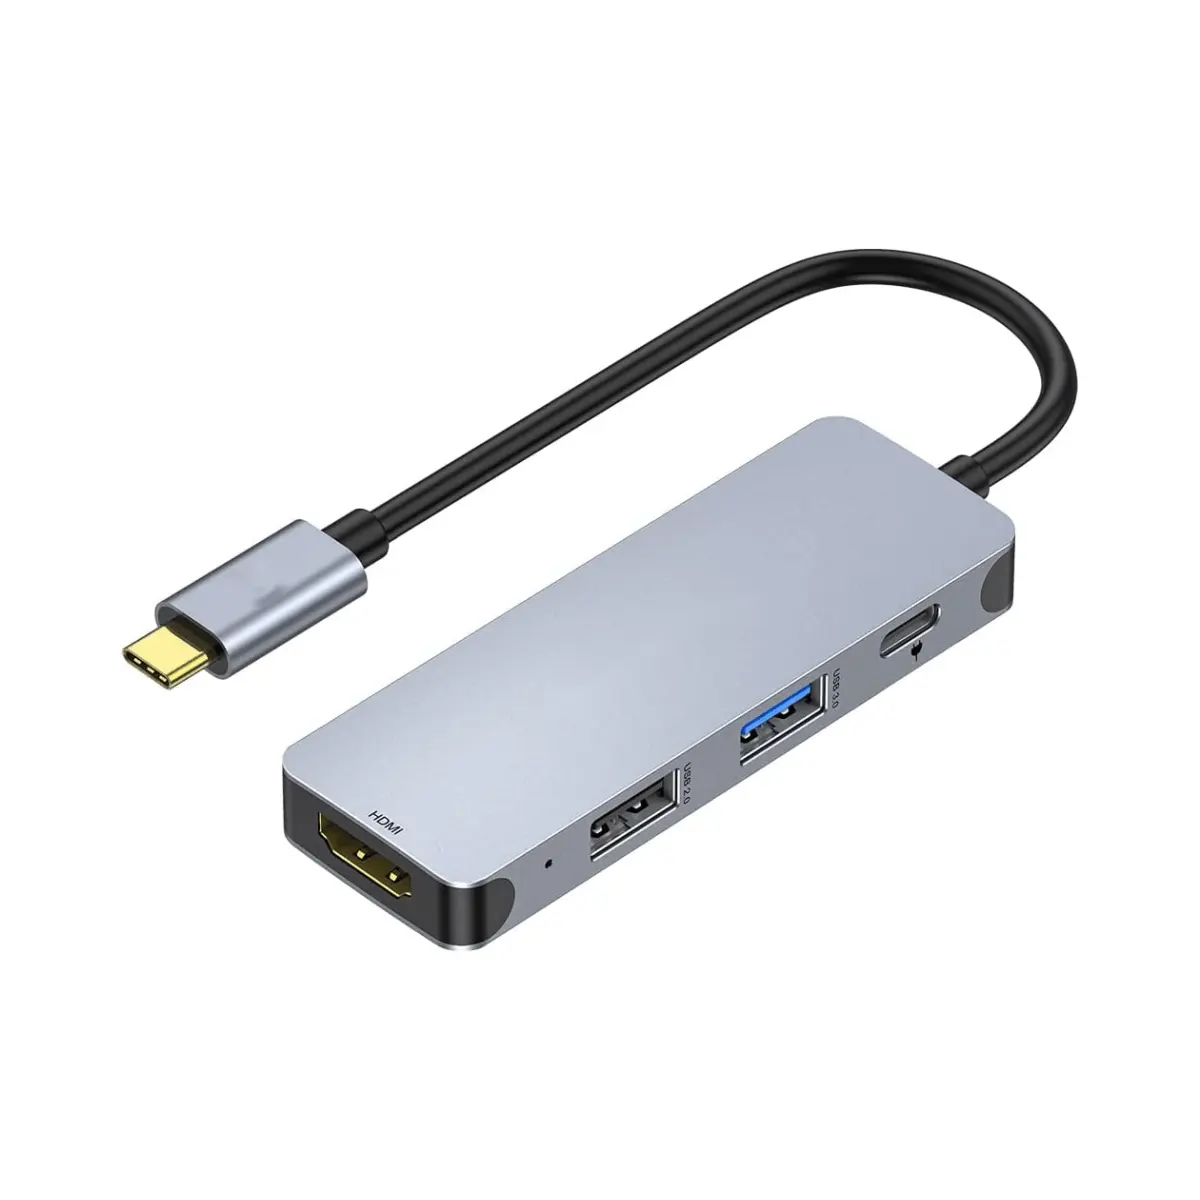 4 in1 USB C Hub OEM HDM I 4K adattatore 100W PD usb3. 0 5Gbps compatibile con Thunderbolt 3 4 Window s Mac OS 10 sopra MacBoo k Pro